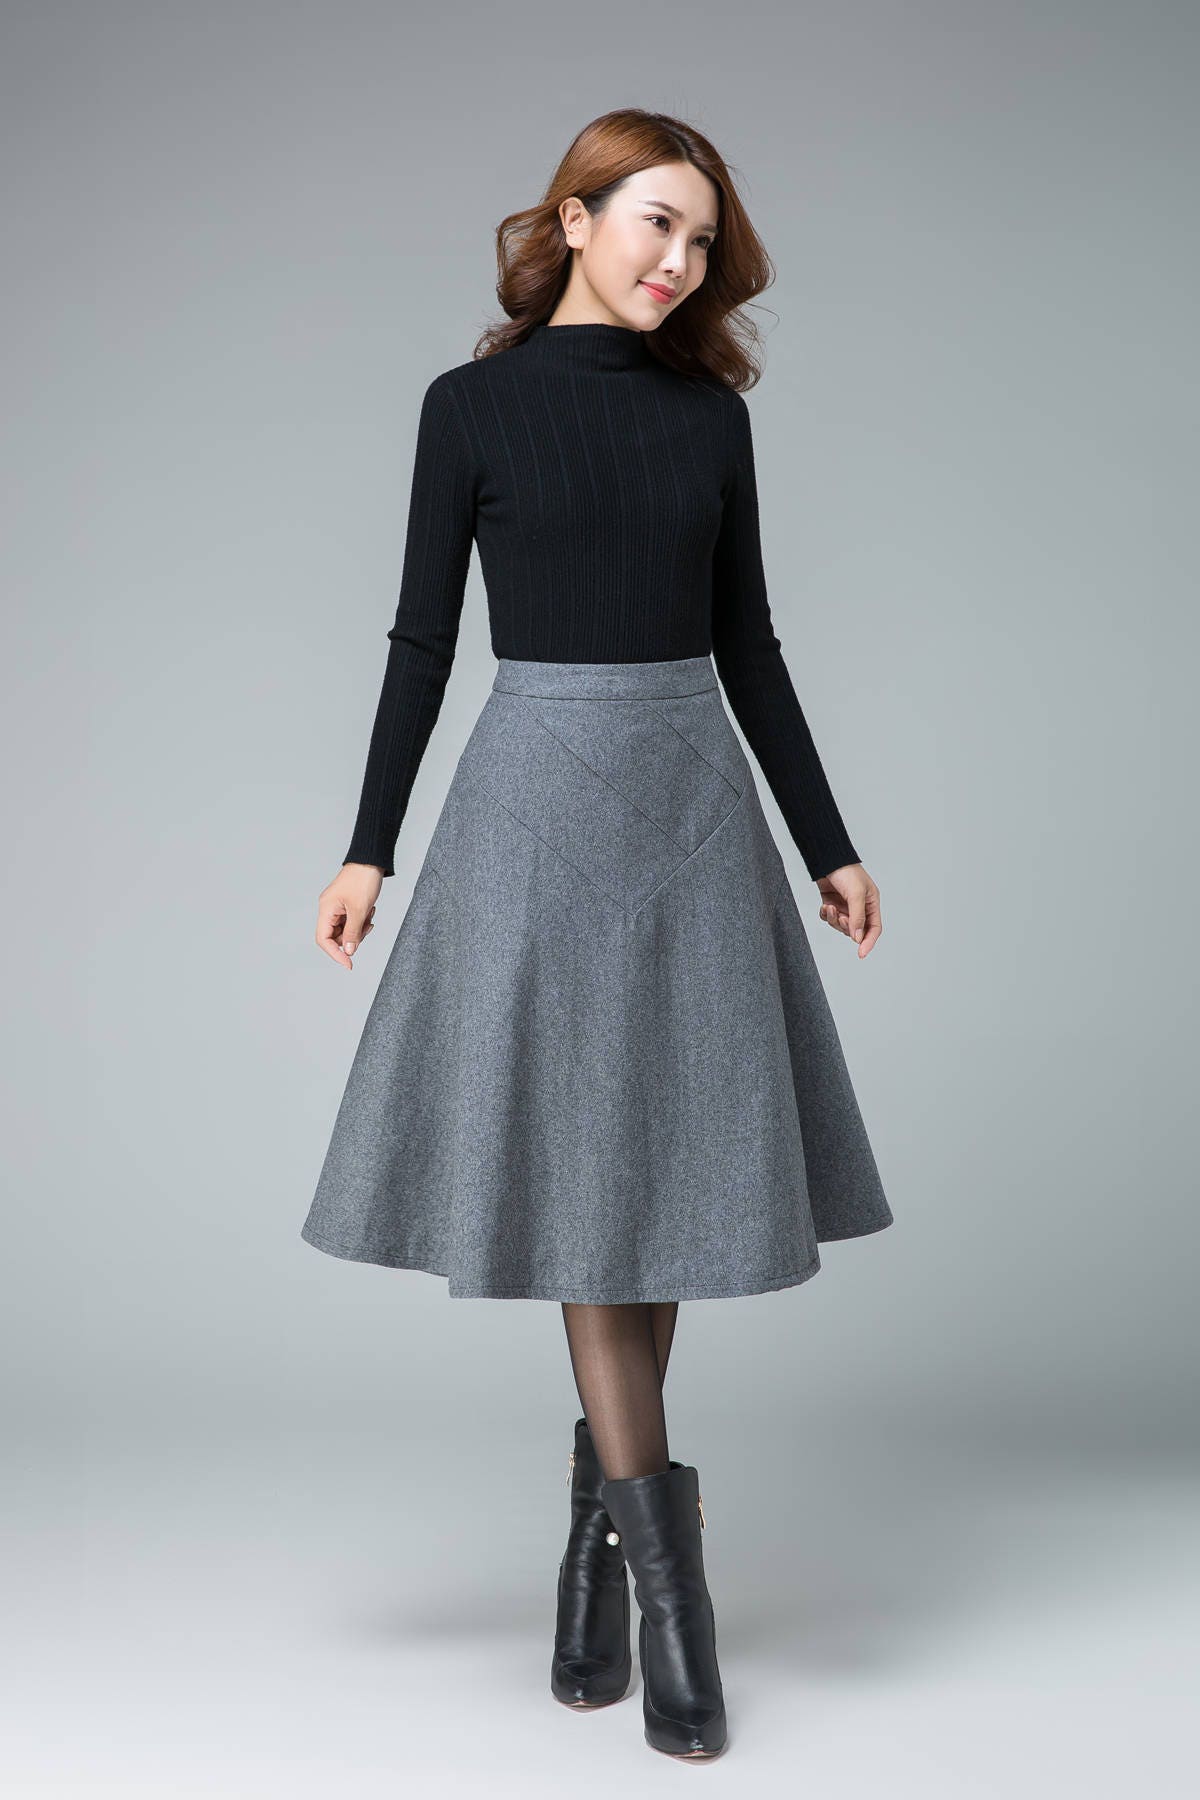 Grey wool skirt short skirt fitted skirt pleated skirt | Etsy